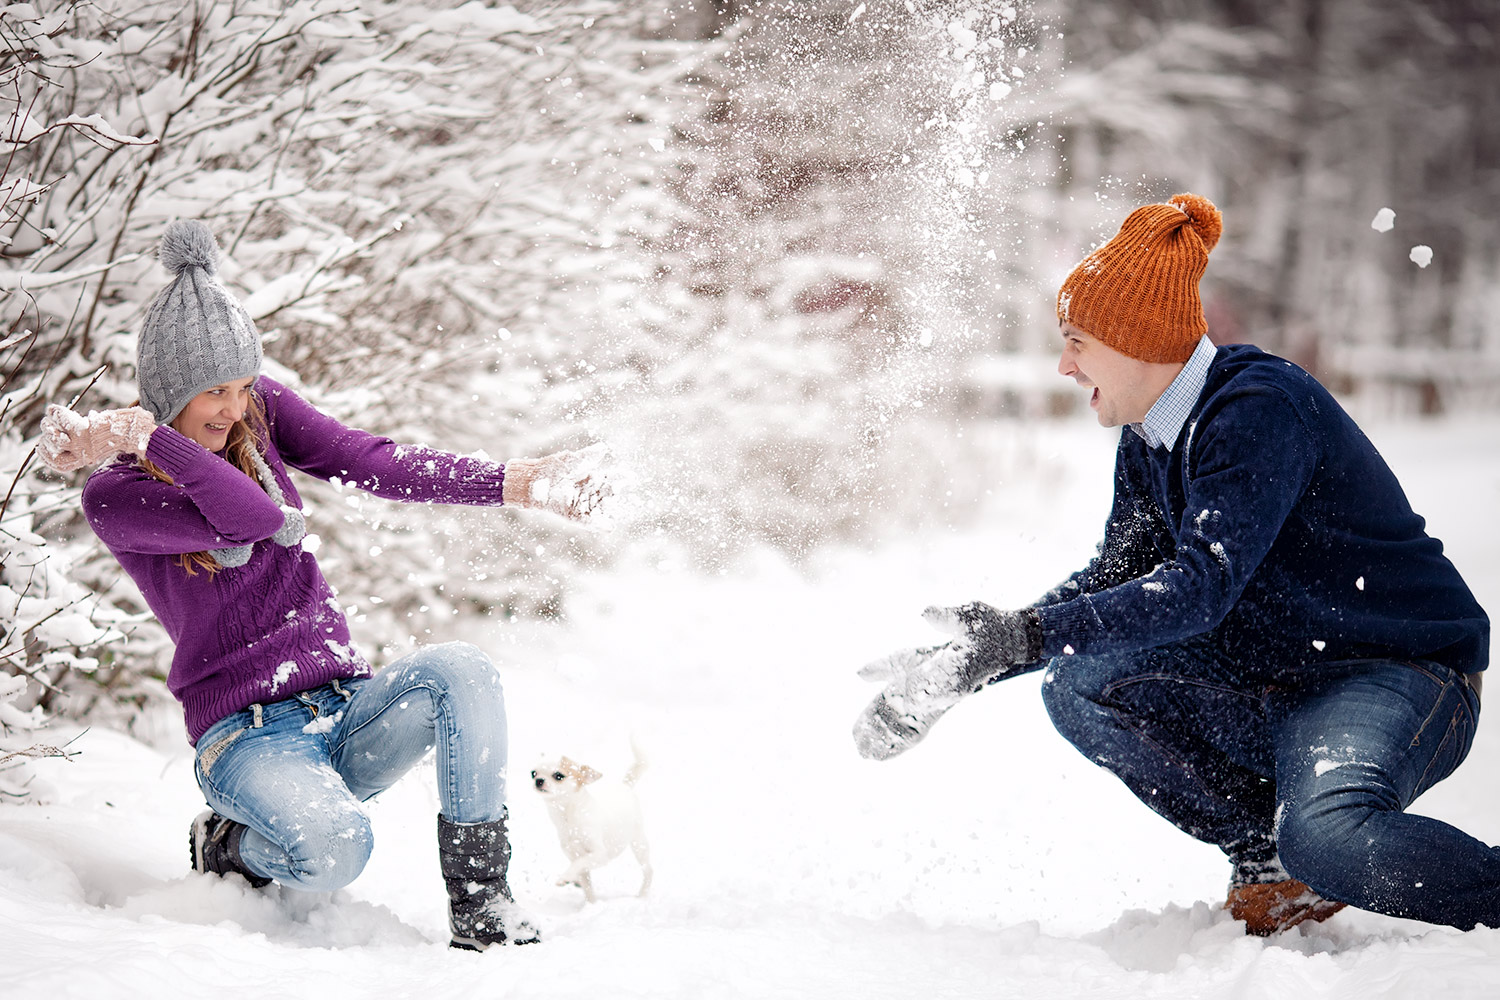 Повторяй снег. Игра в снежки. Зима радость. Люди зимой. Фотосессия зимой на улице.